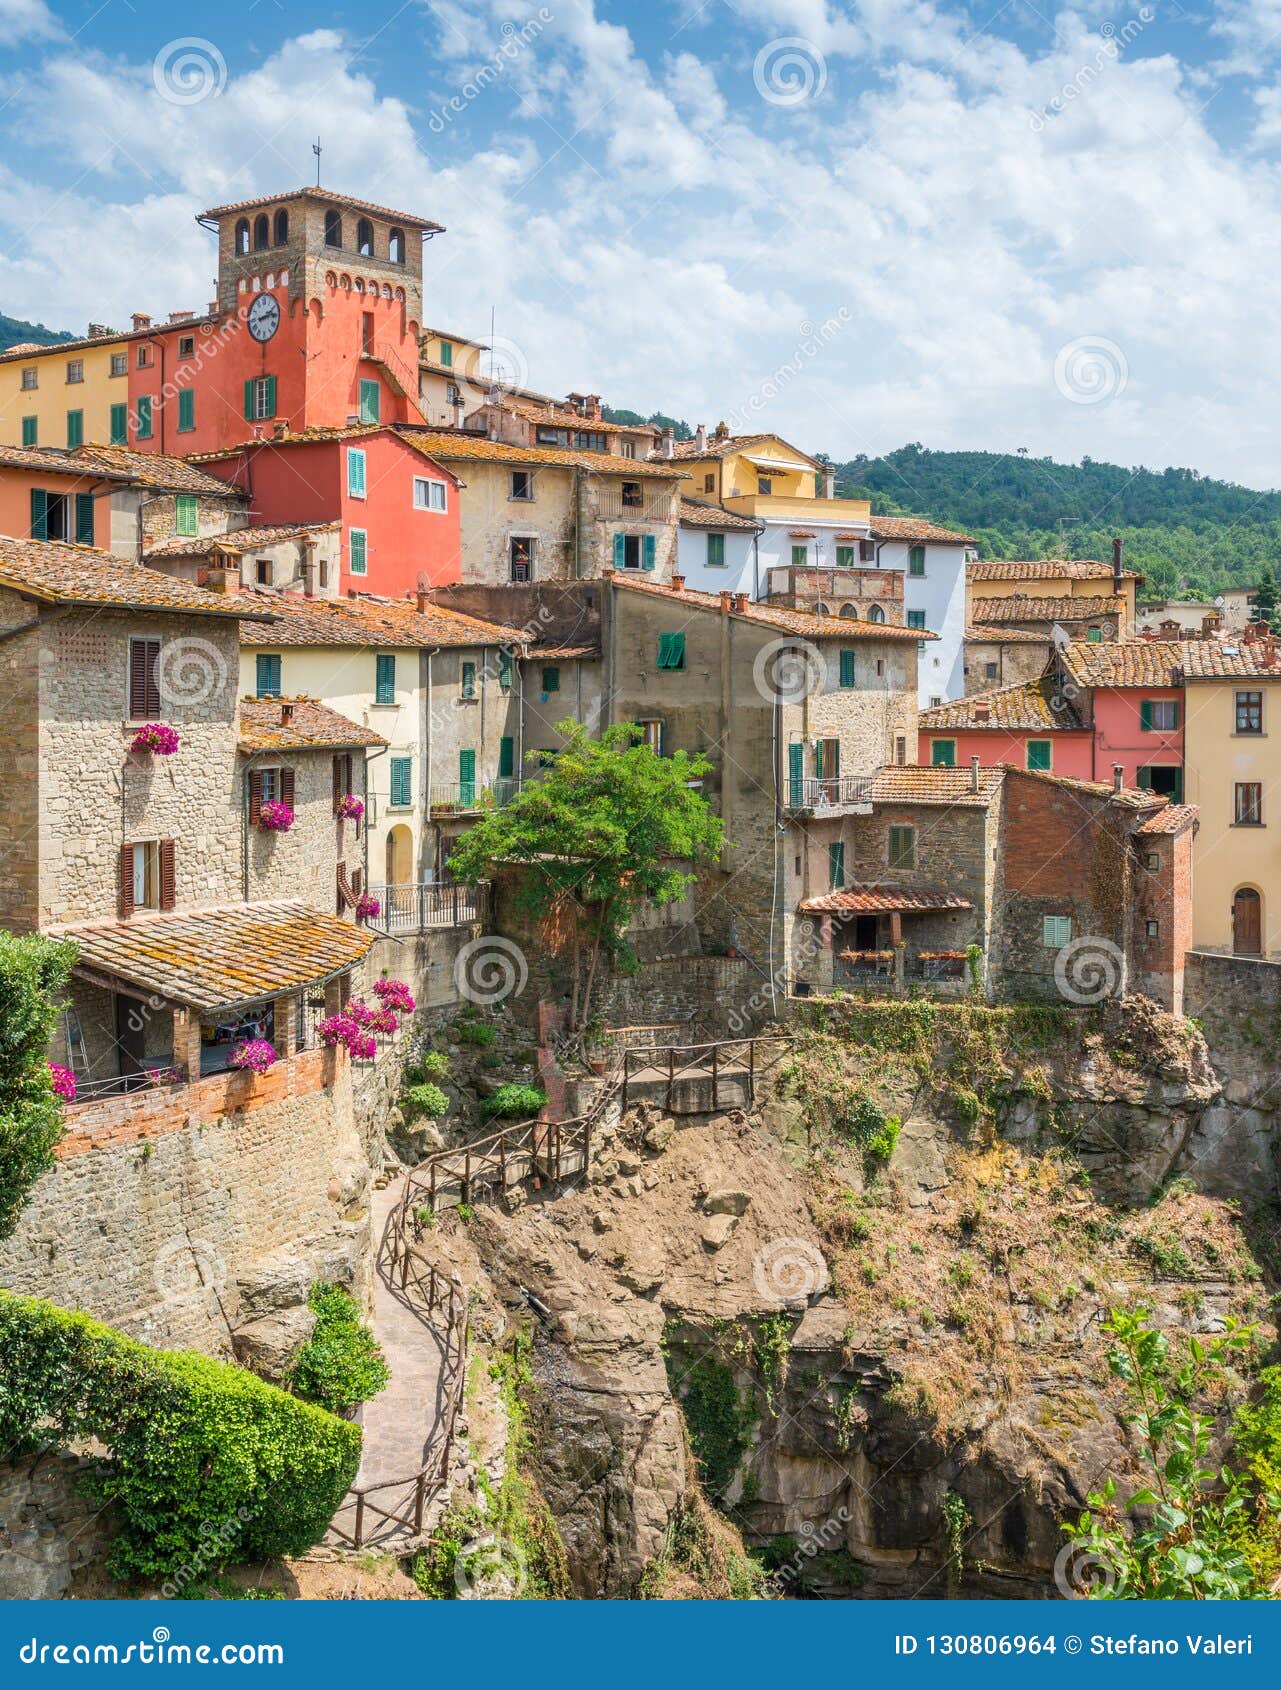 loro ciuffenna, village in the province of arezzo in the italian region tuscany. central italy.